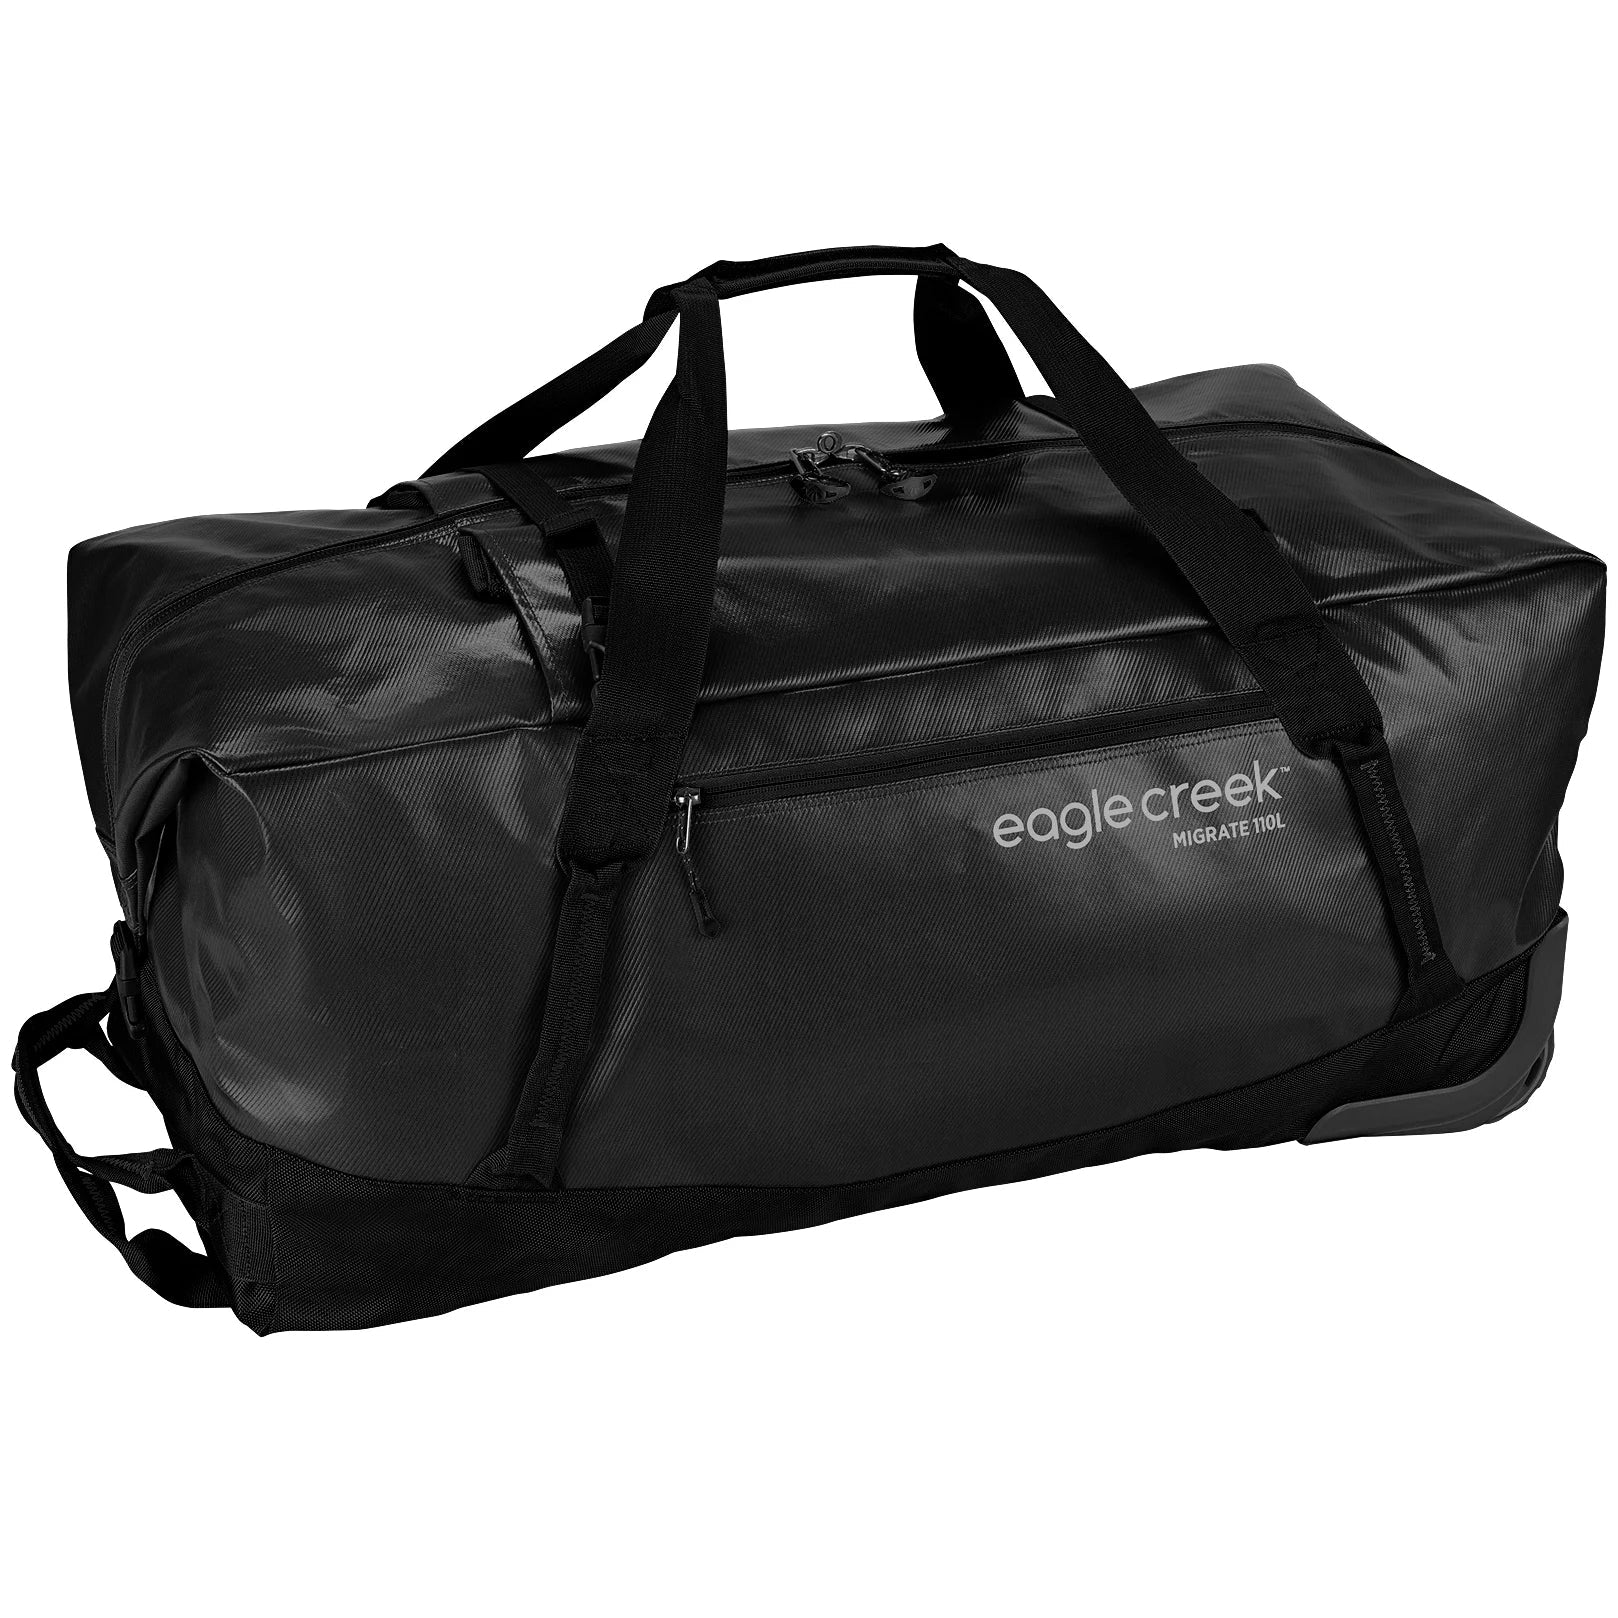 Eagle Creek Migrate Rolling Travel Bag 76 cm - black